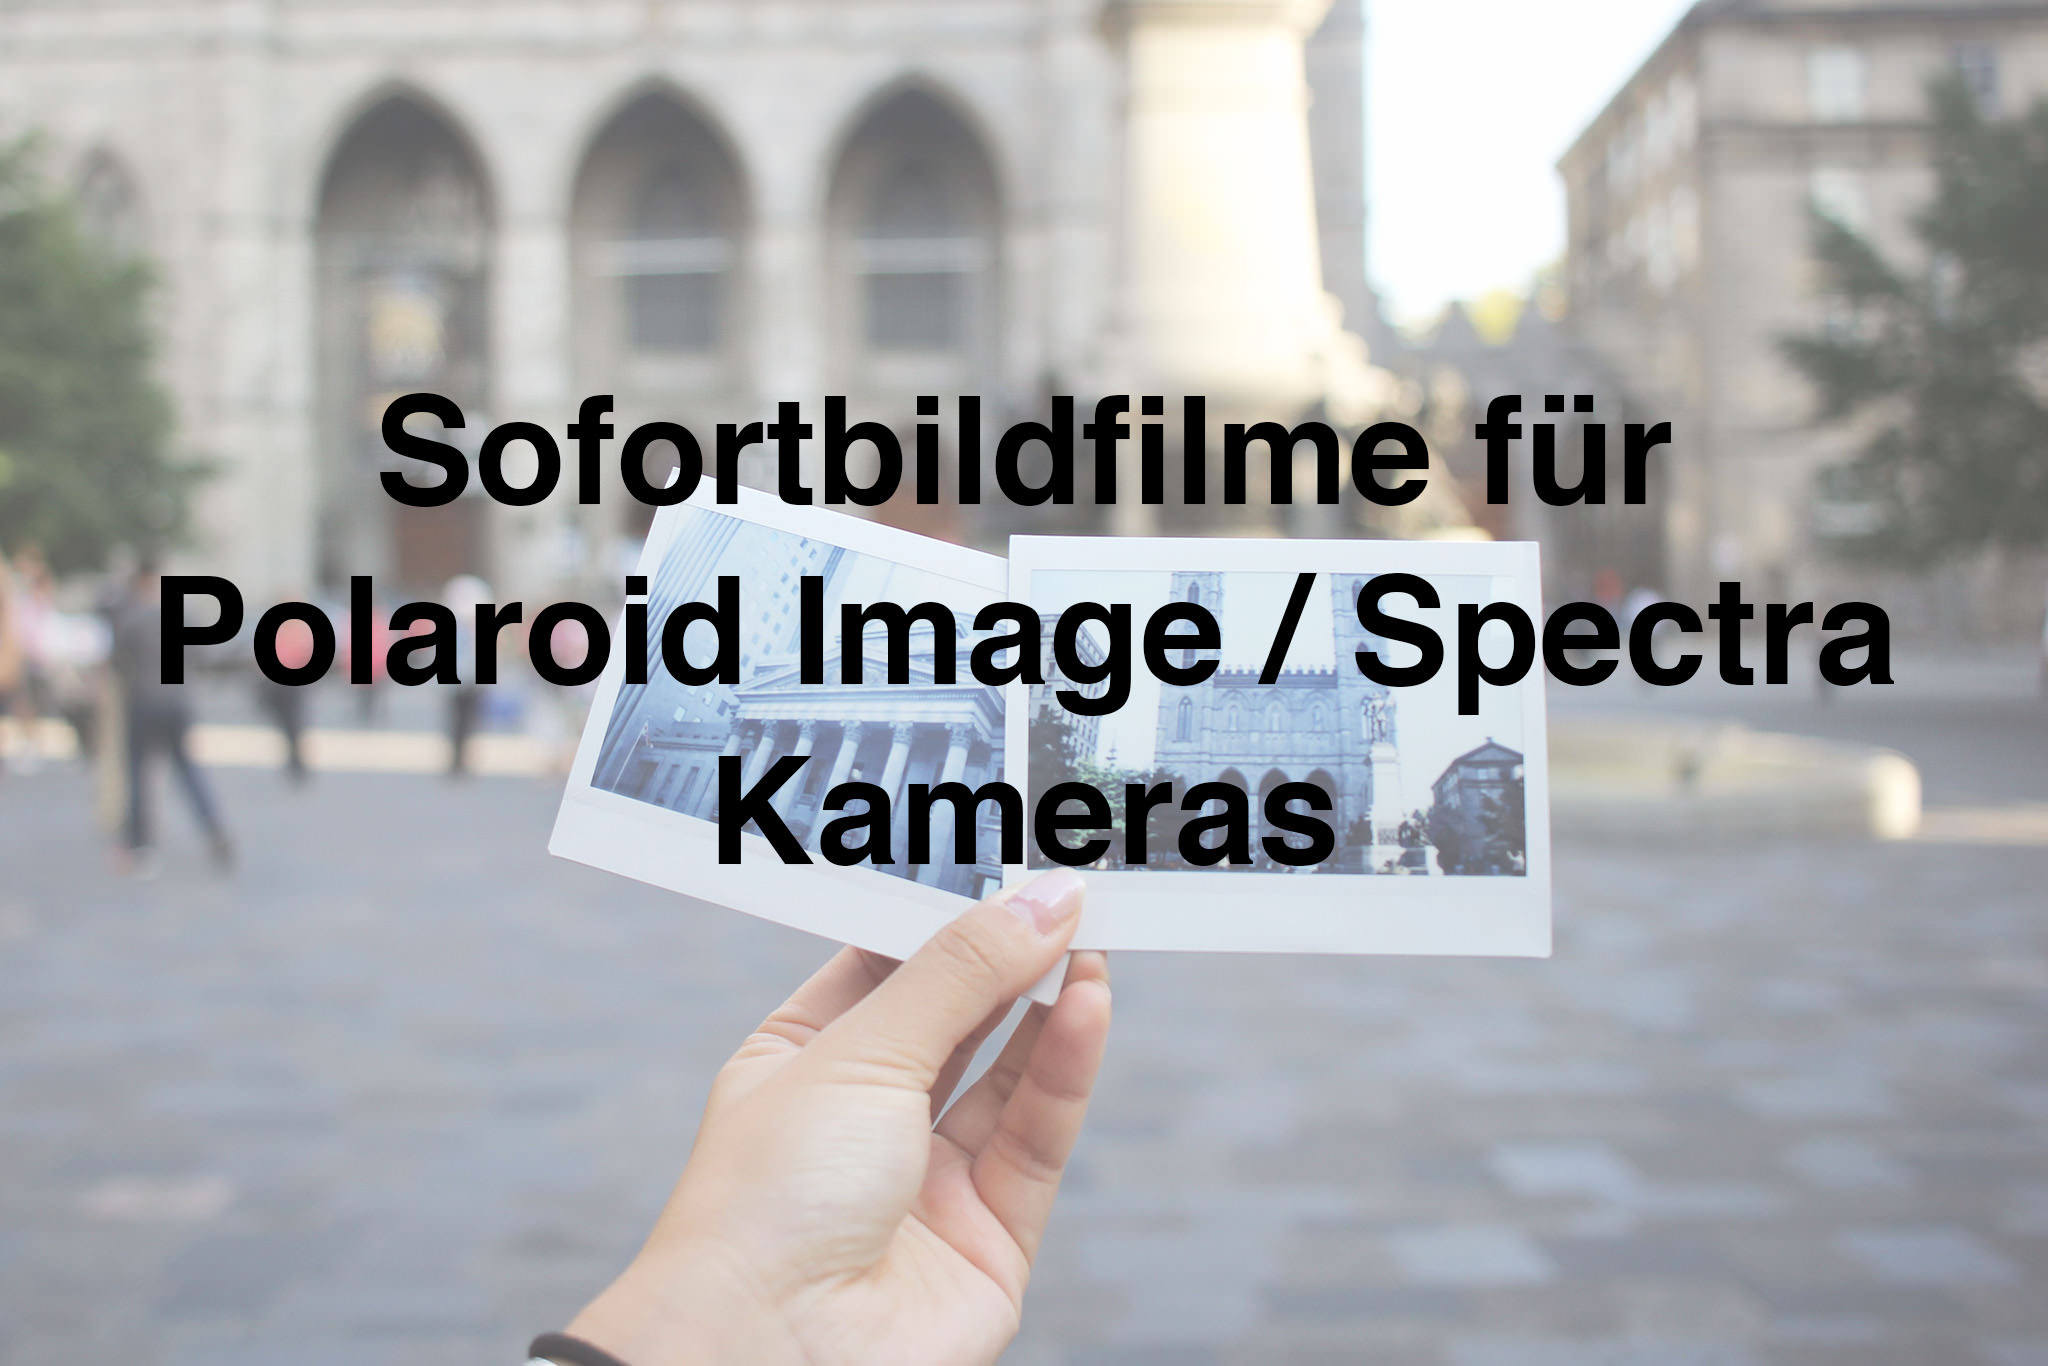 sofortbildfilme-spectra-polaroid-image-kaufen